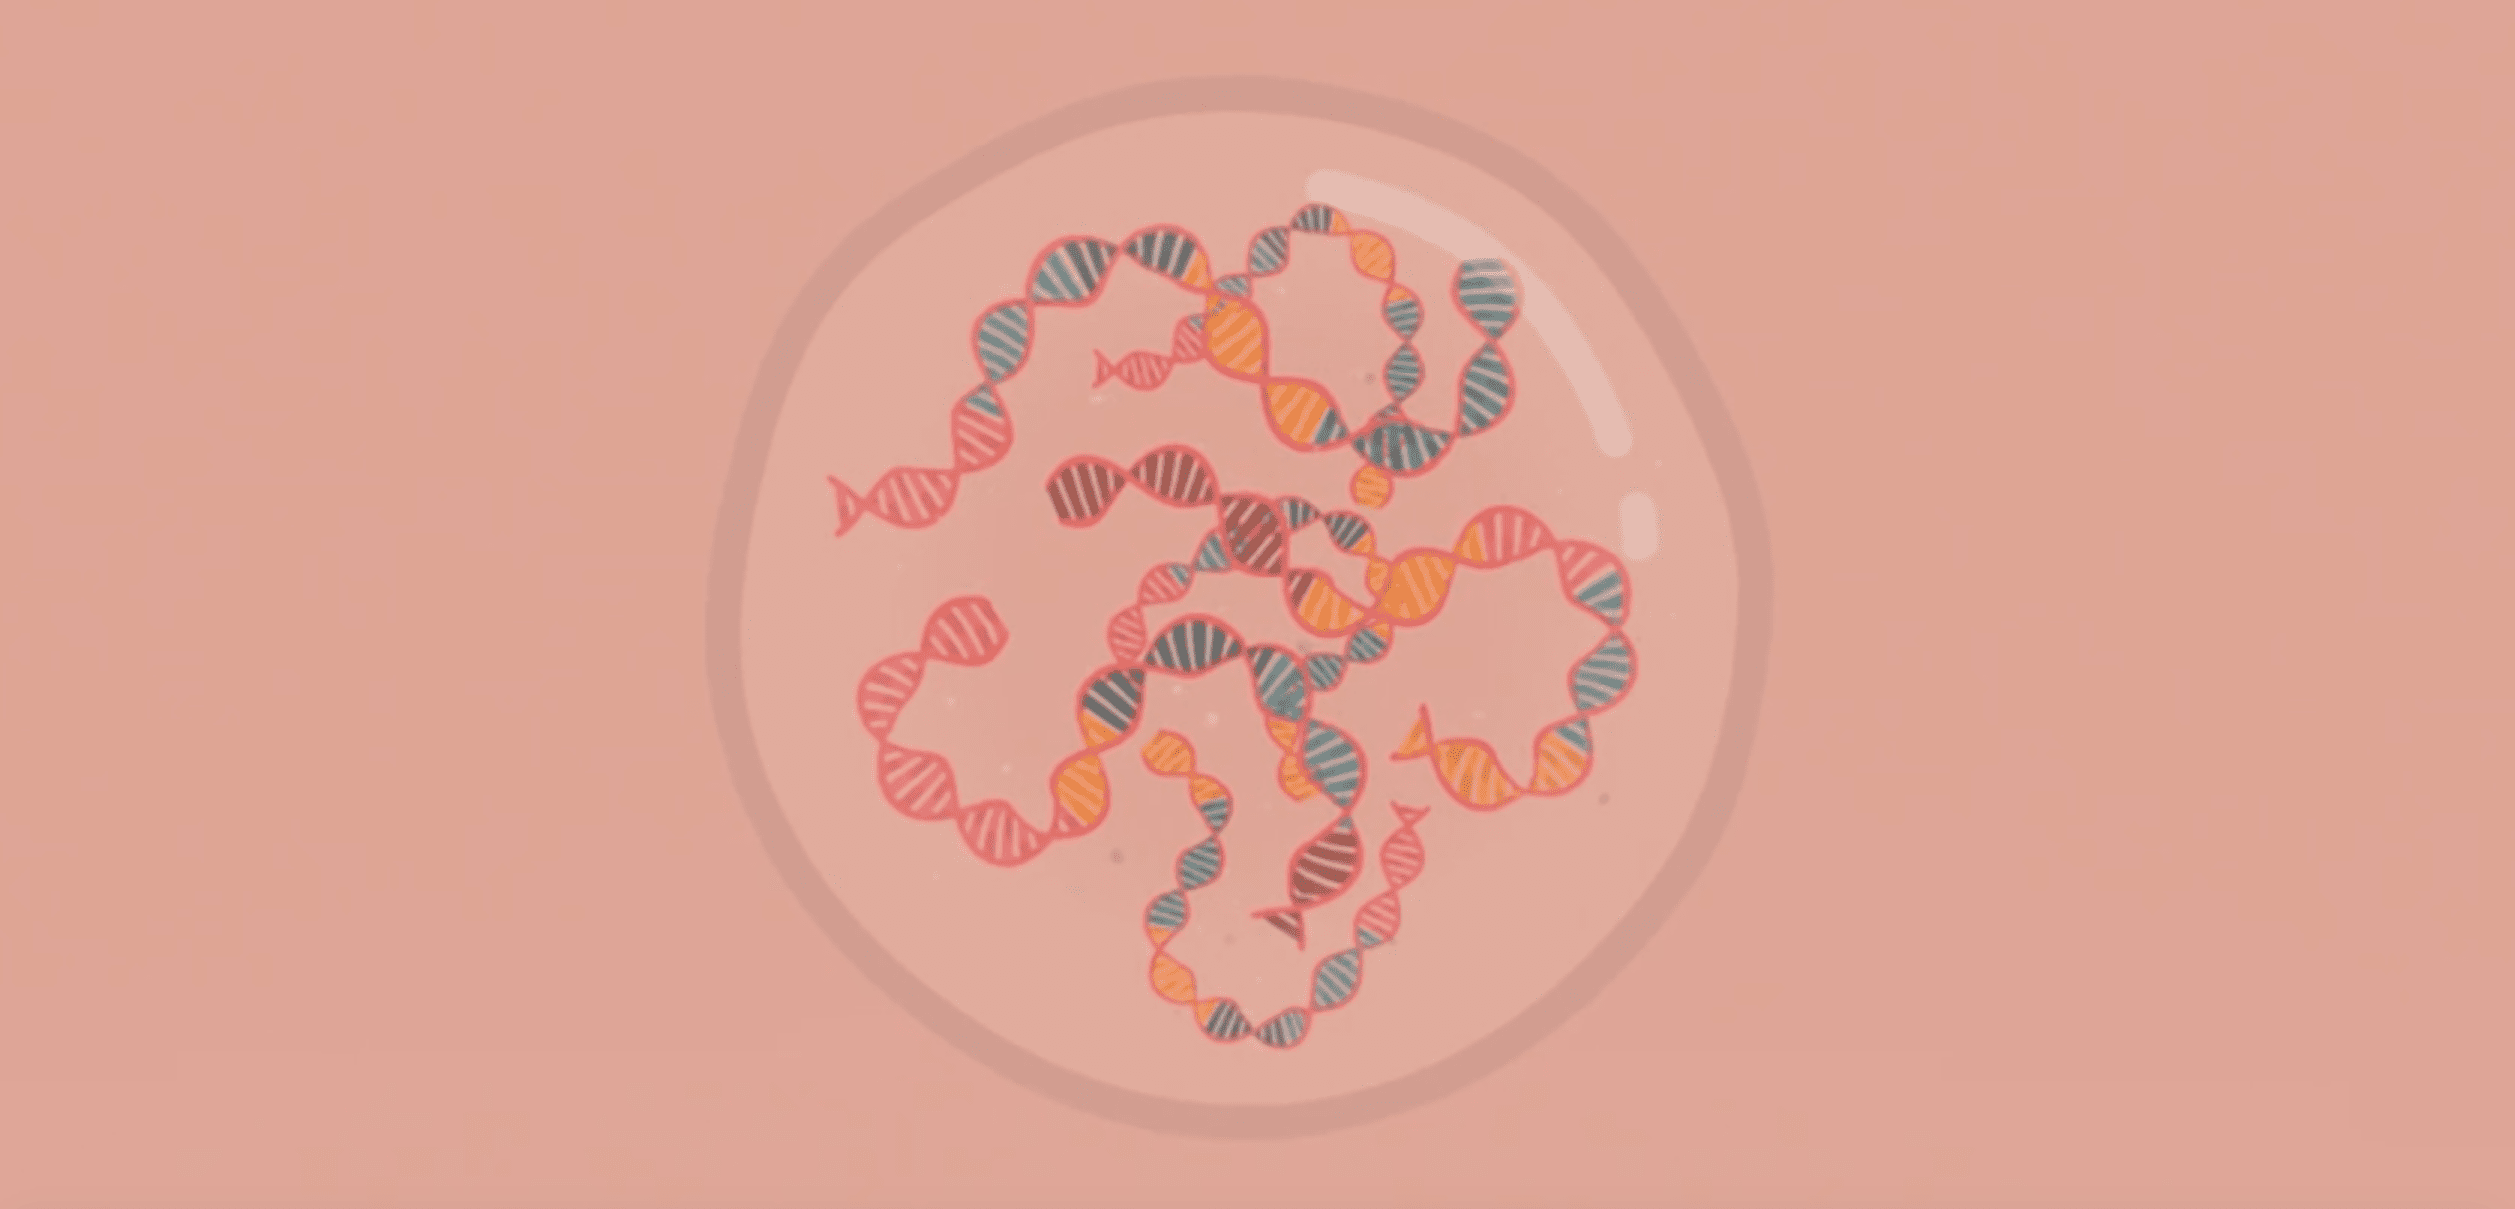 缠绕在一个圆圈中的 DNA 双螺旋